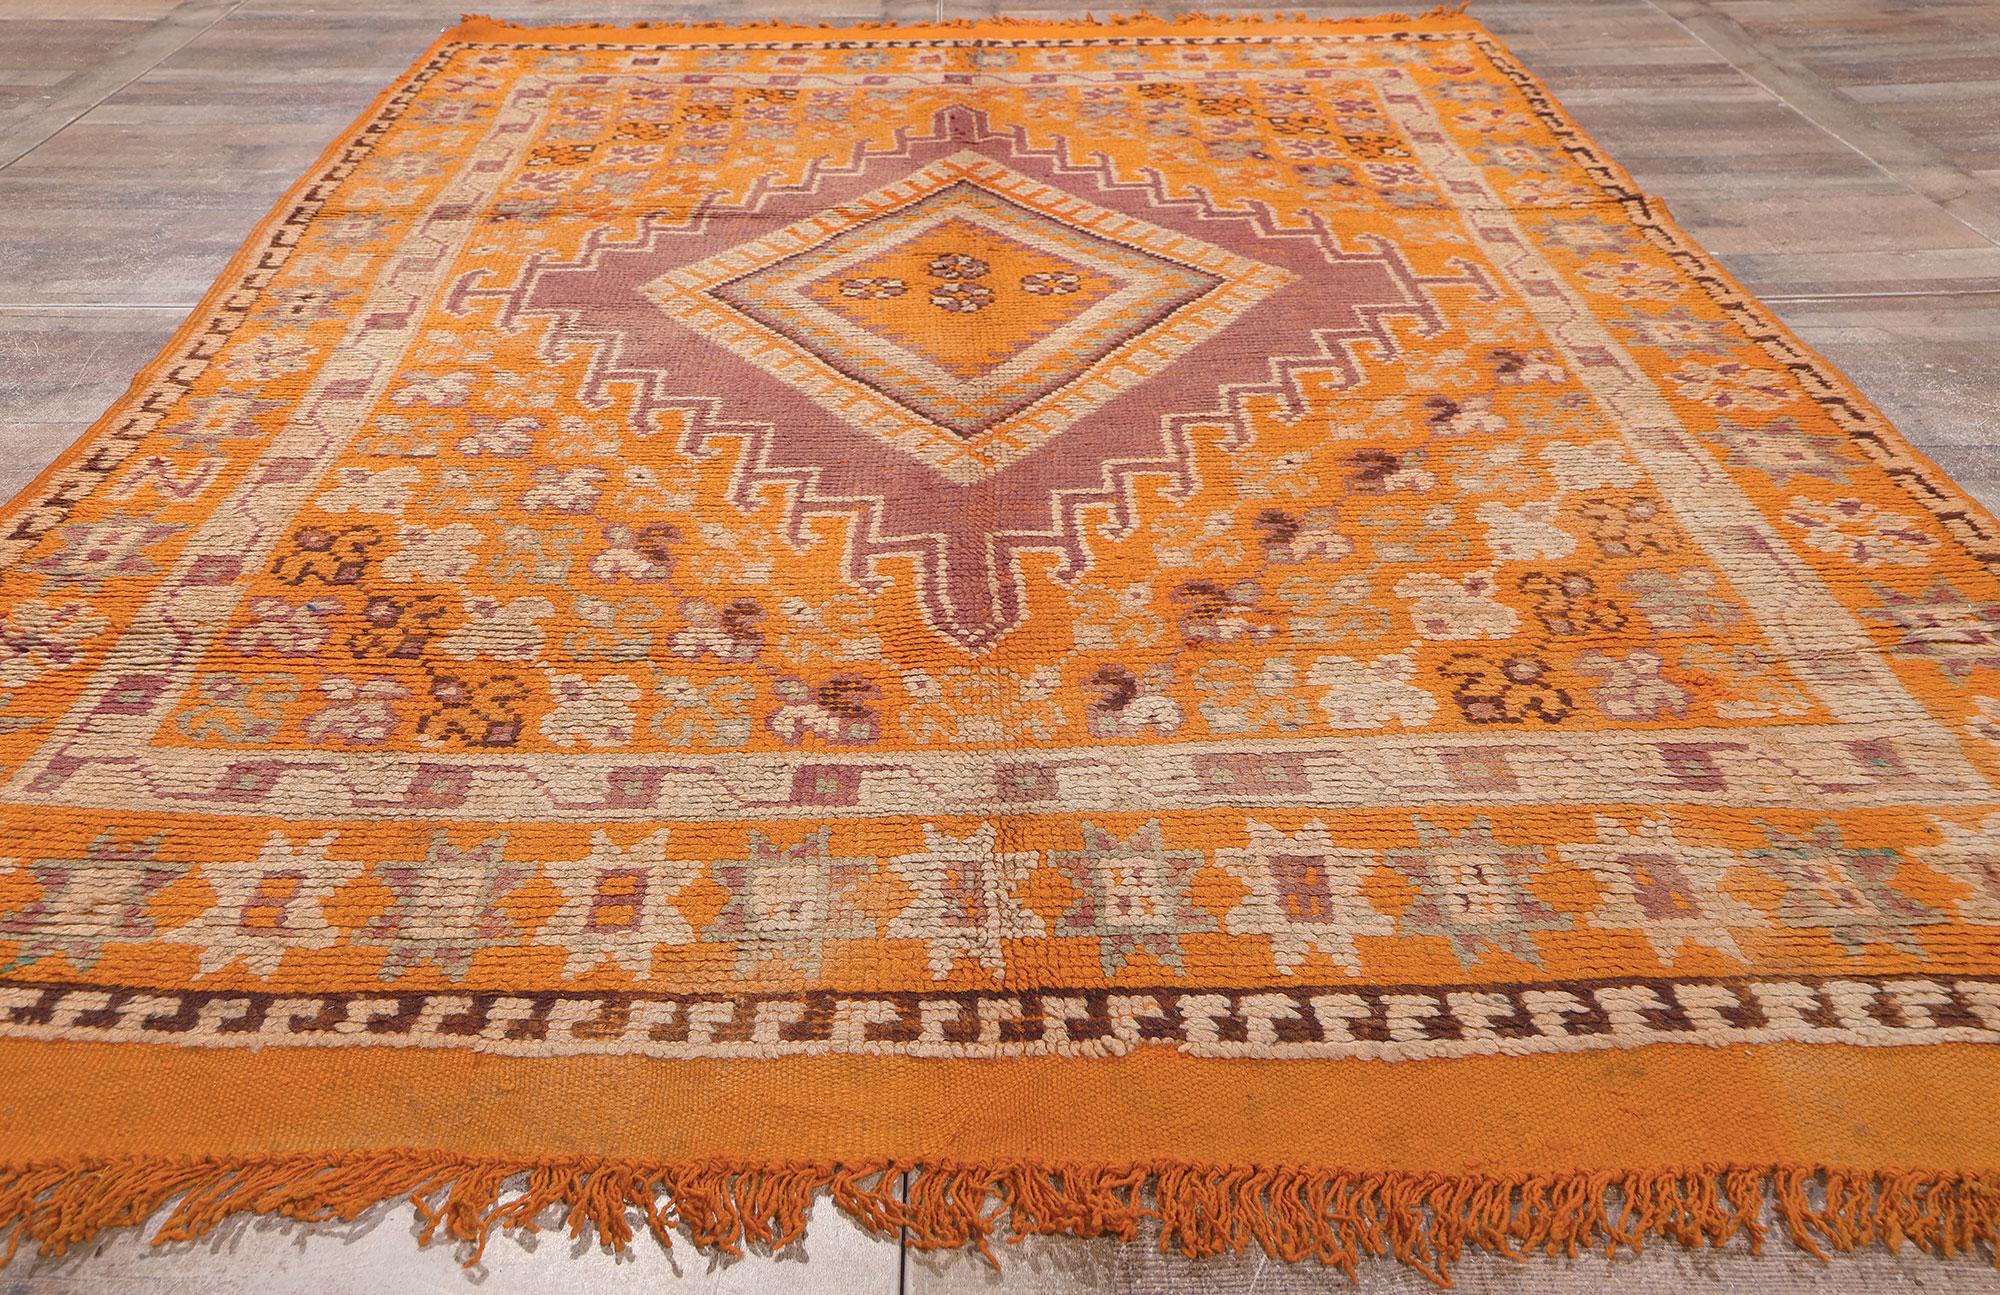 Laine Tapis marocain orange, enchantement tribal rencontre le style bohème audacieux en vente